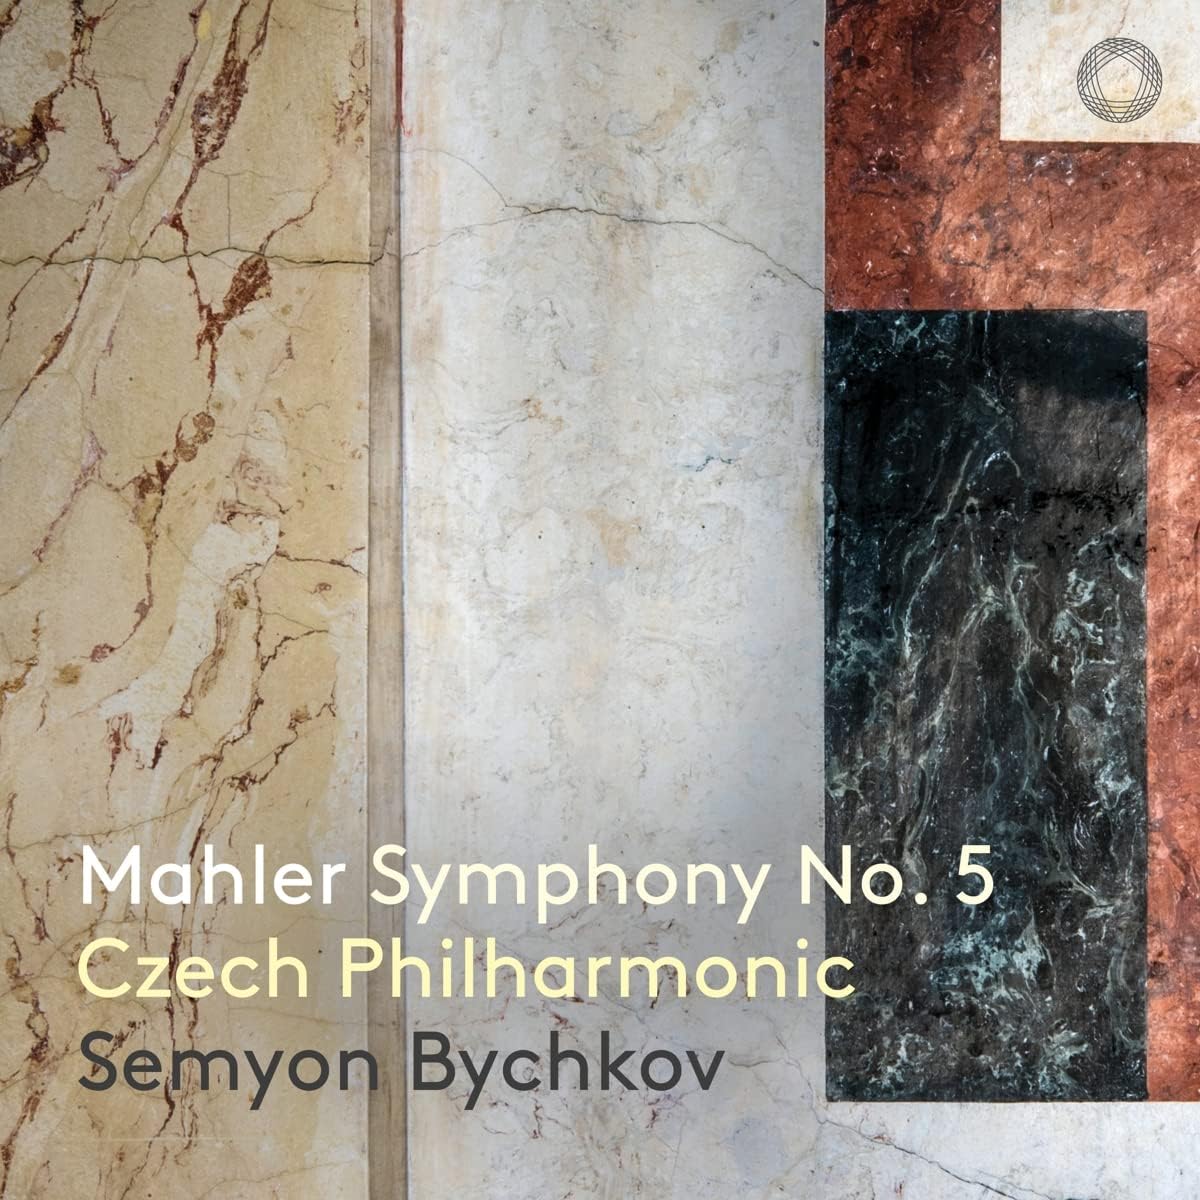 Mahler 5 bychkov